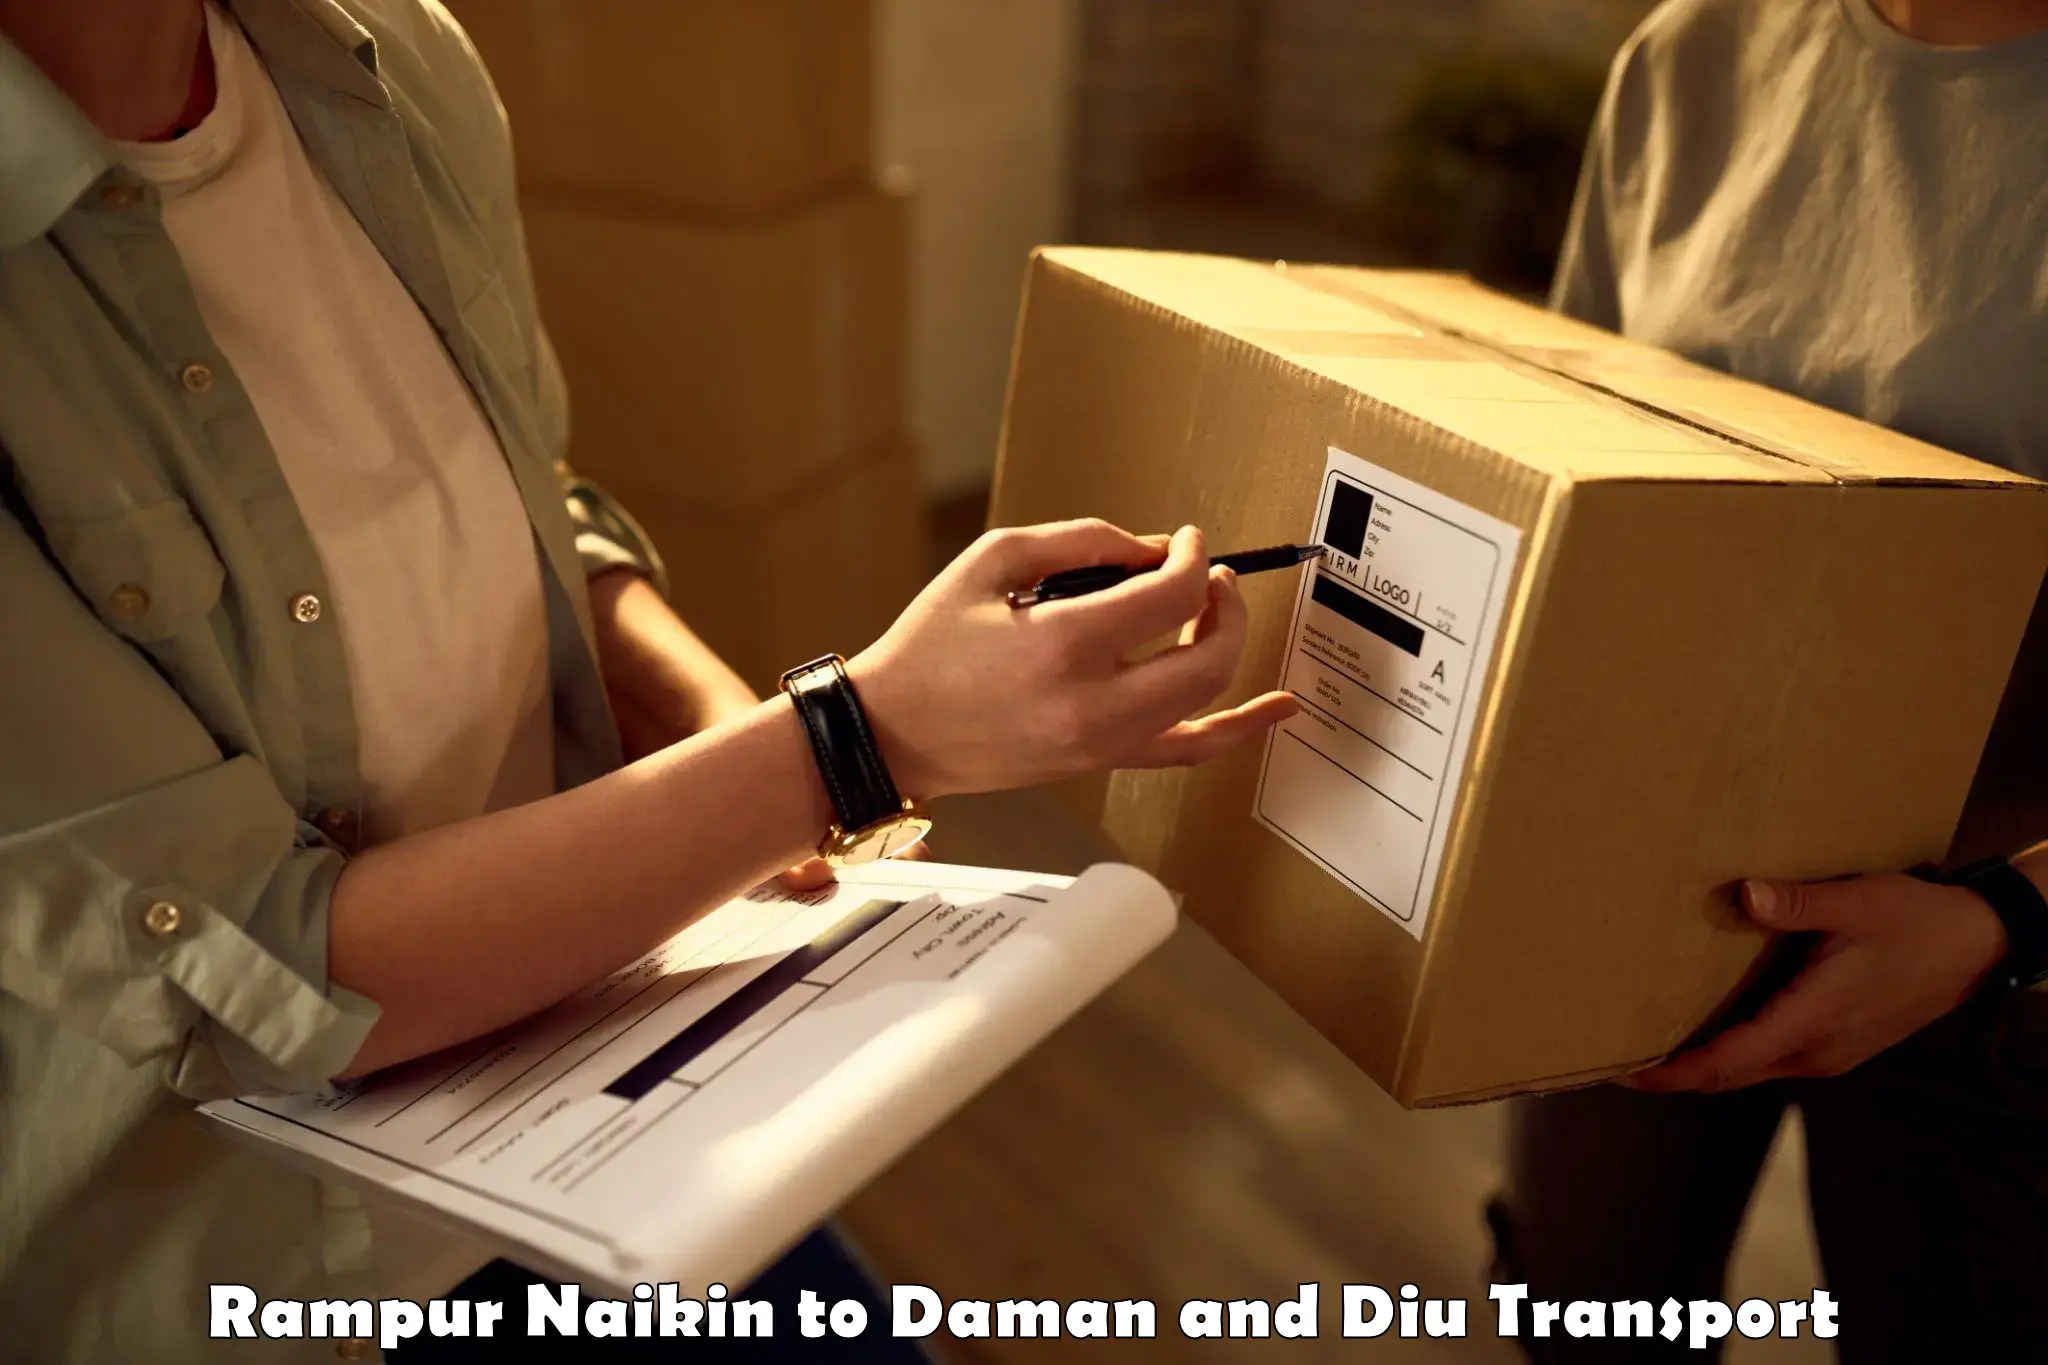 Land transport services Rampur Naikin to Diu